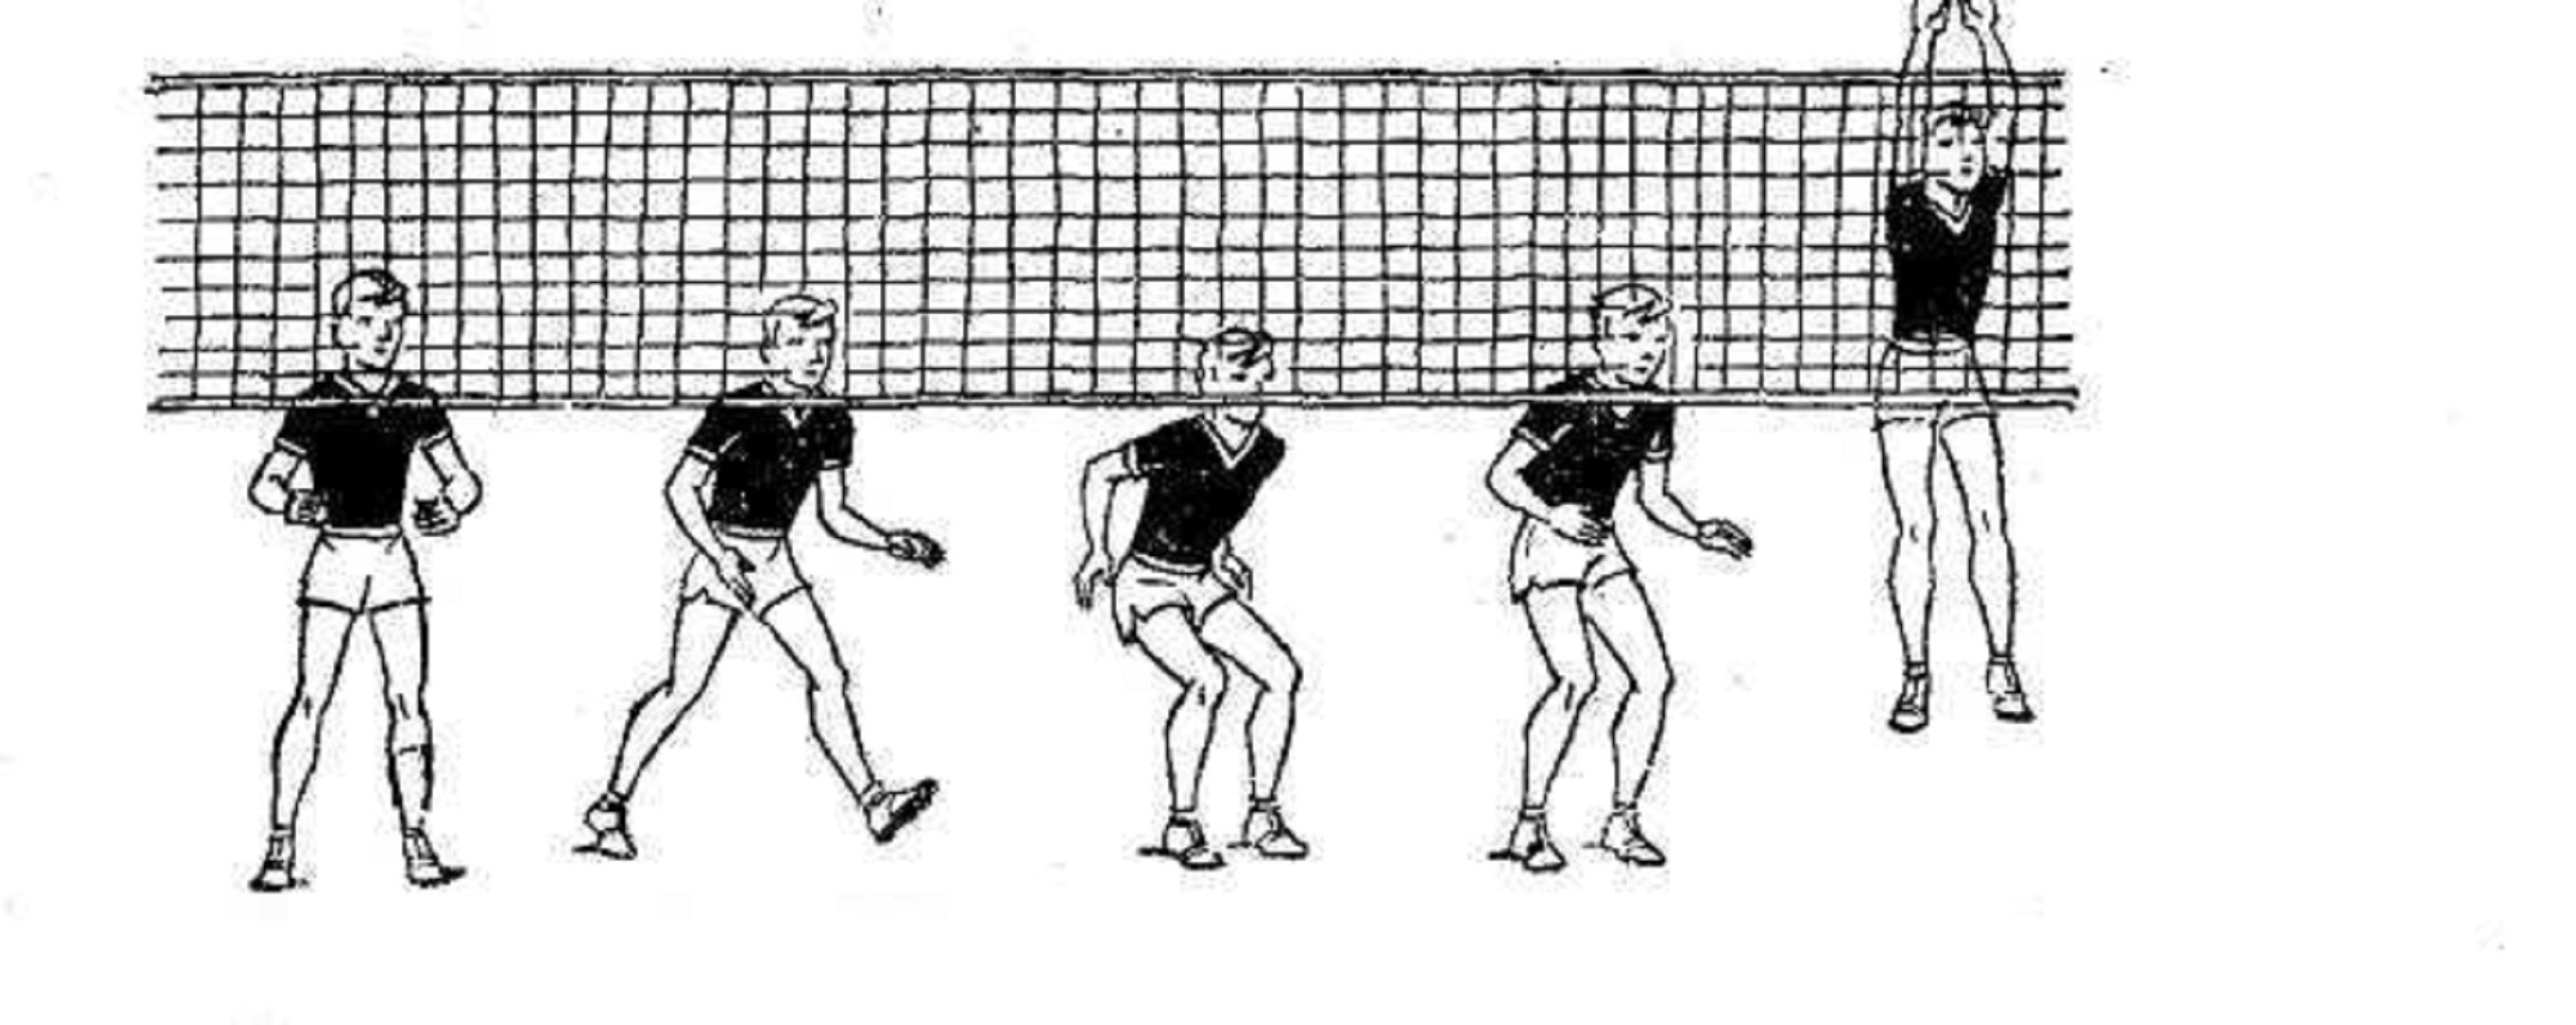 Техника одиночного блокирования в волейболе